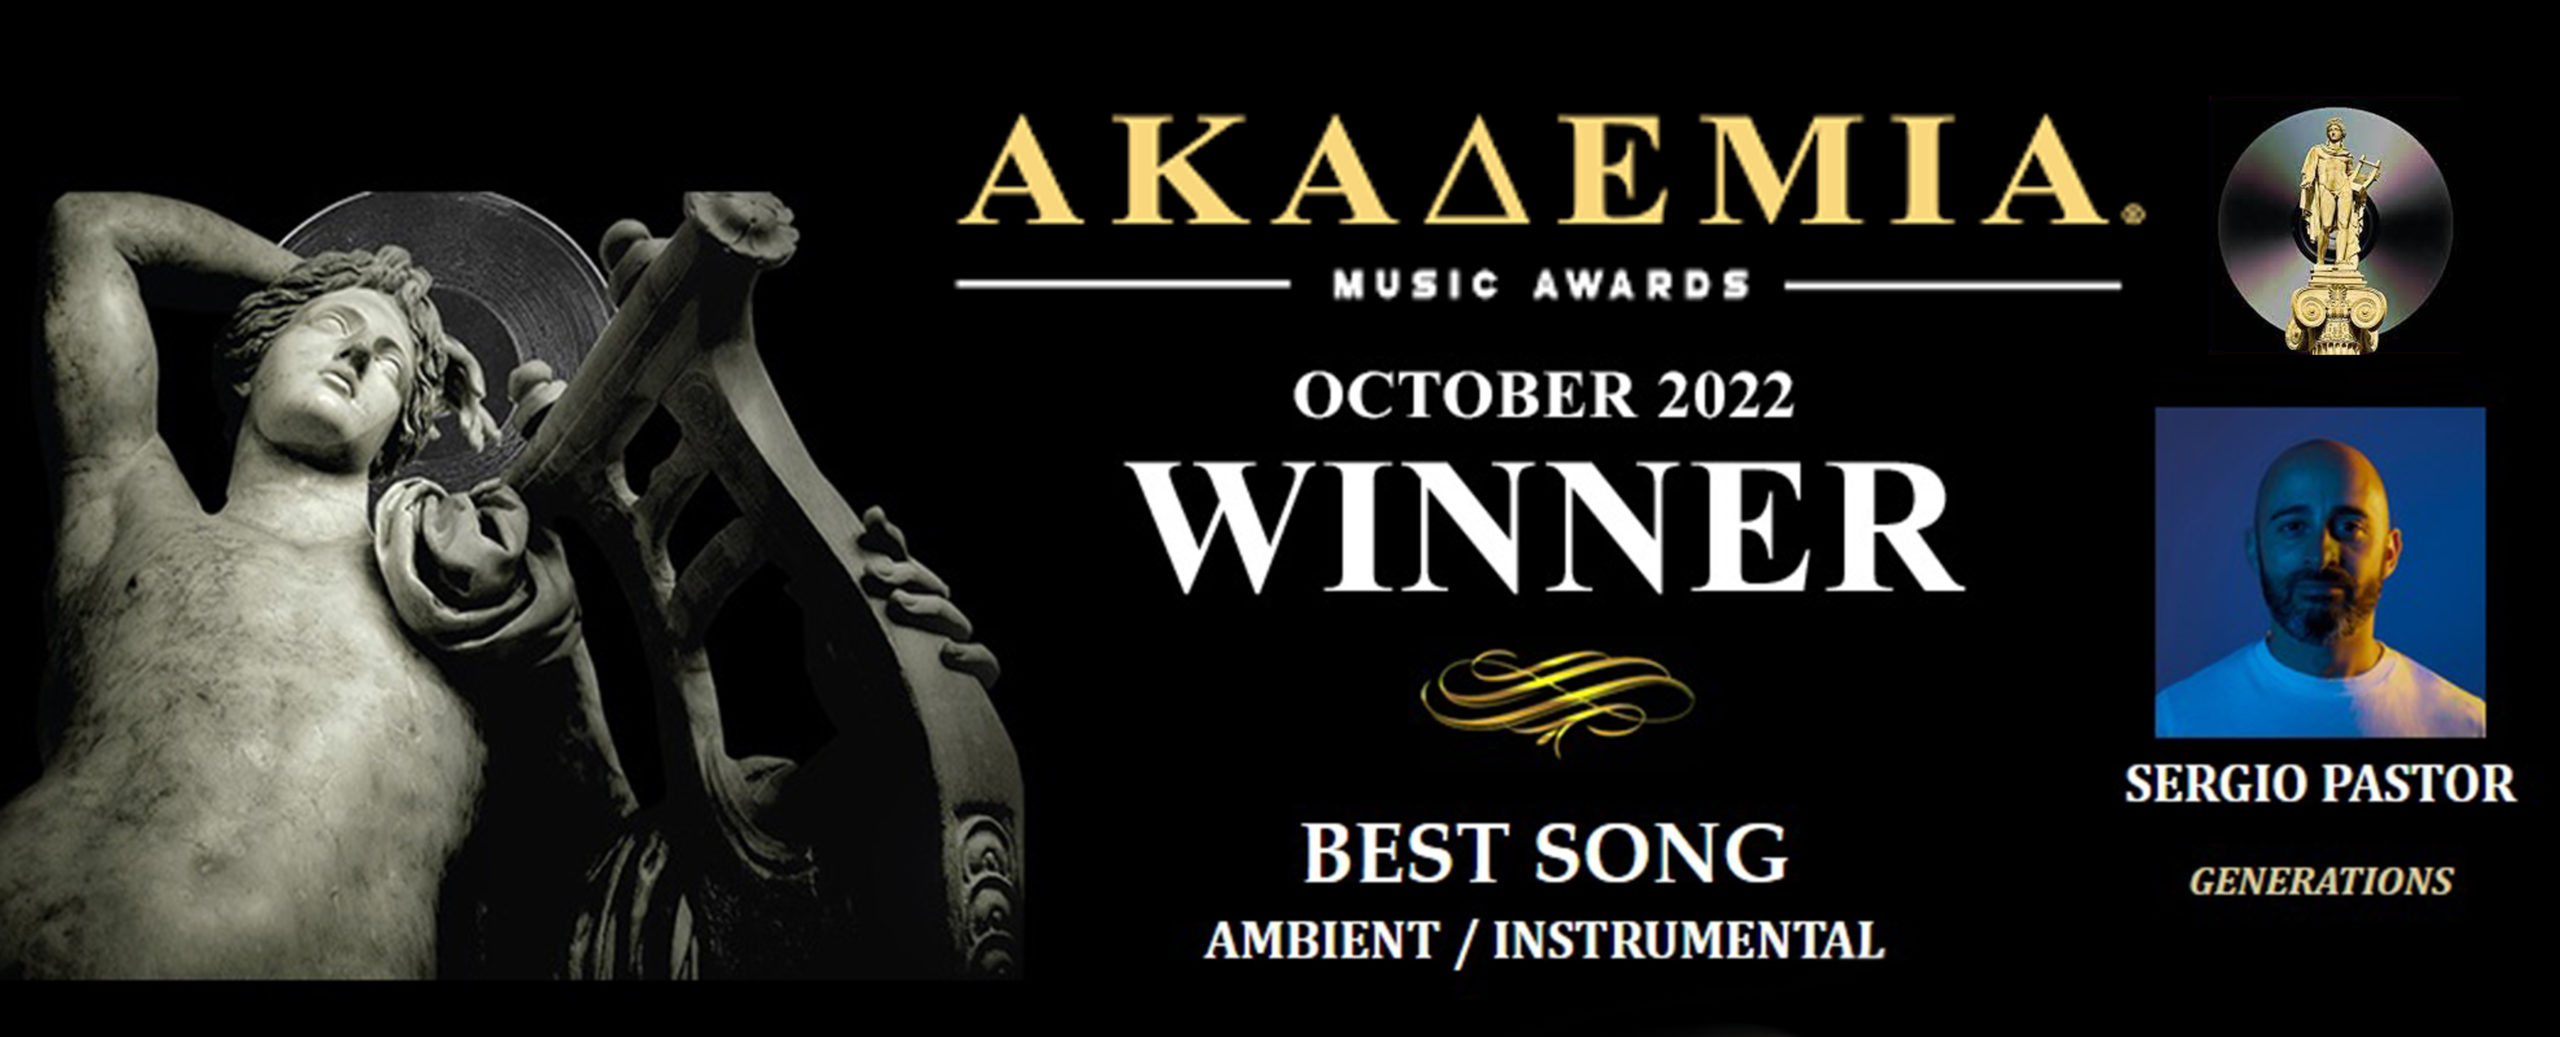 Fotos Cabecera Web - The Akademia Music Awards1